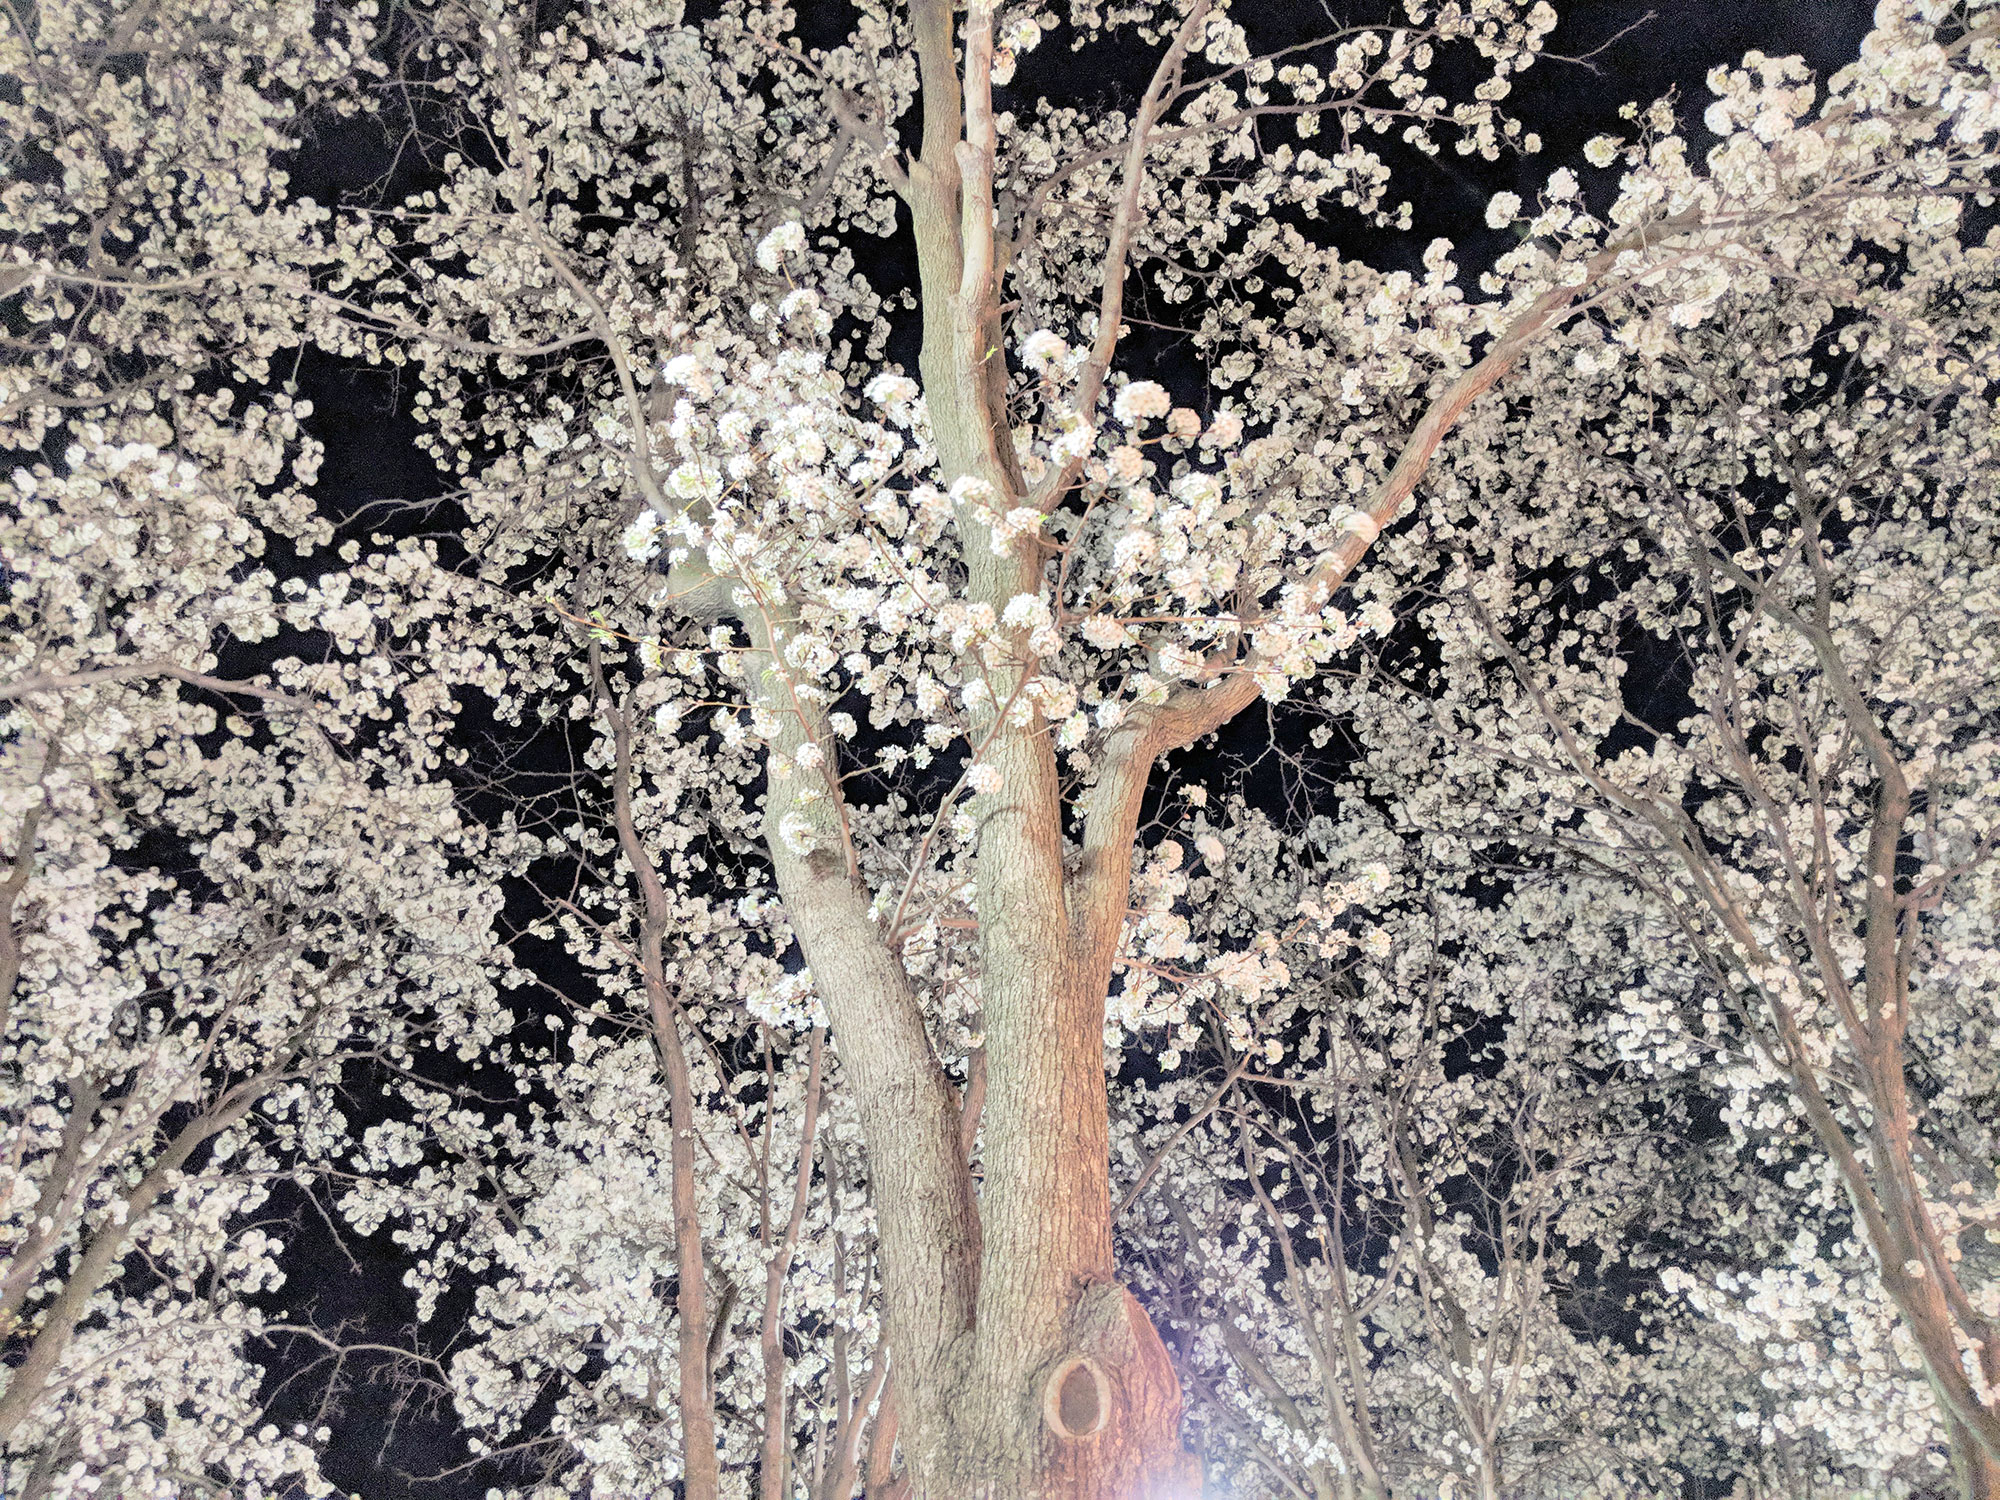 Cherry Blossoms at night in Arlington, VA.